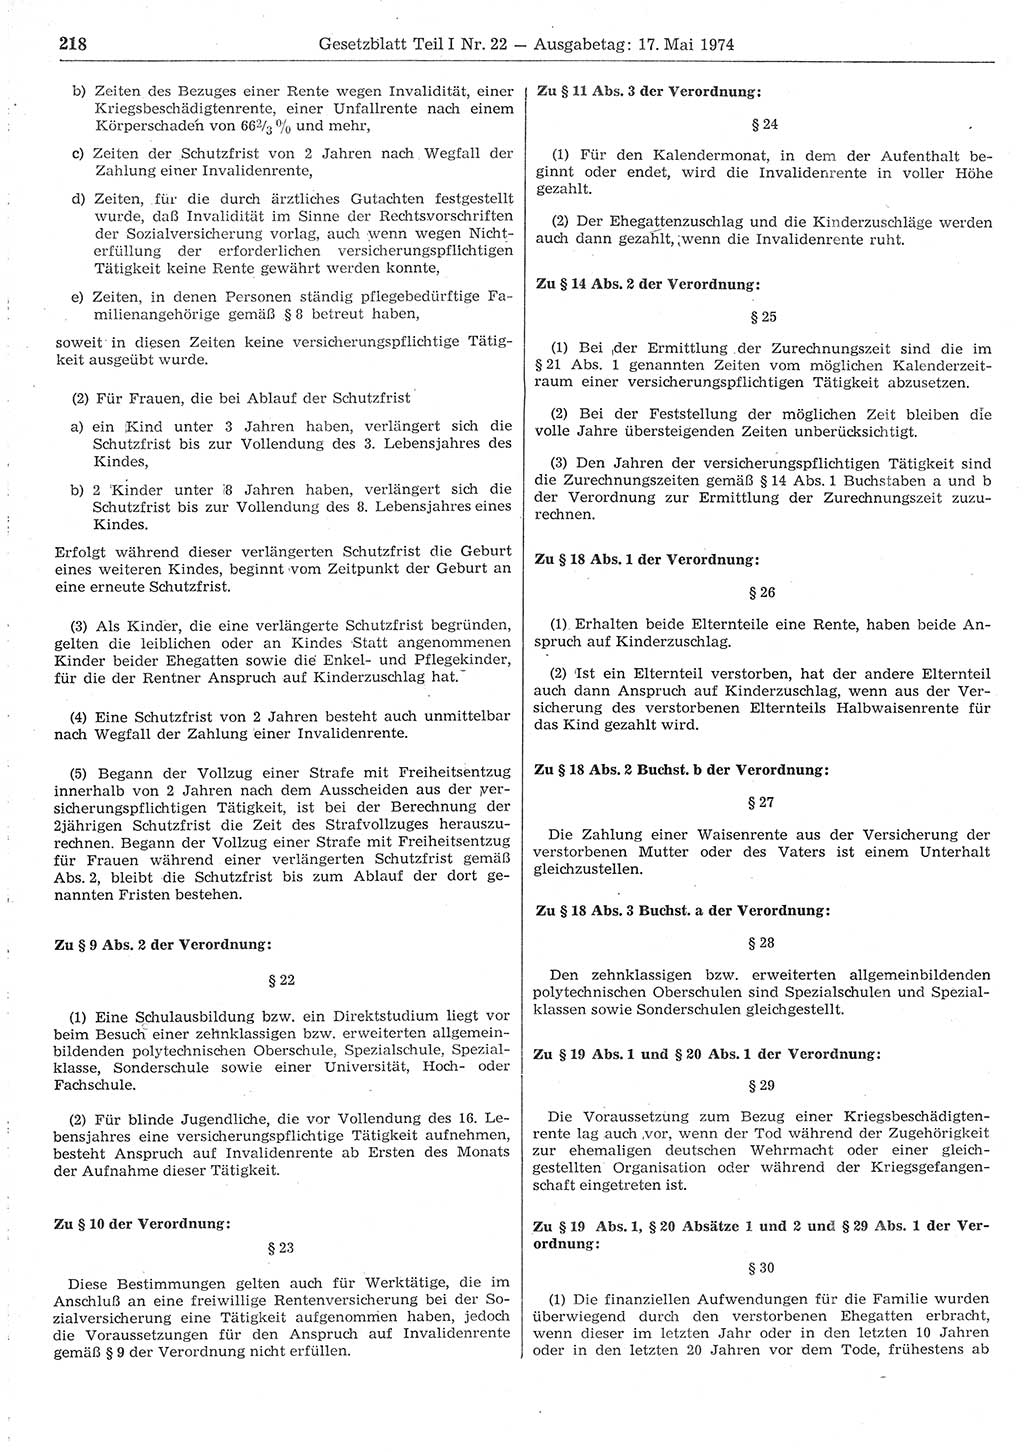 Gesetzblatt (GBl.) der Deutschen Demokratischen Republik (DDR) Teil Ⅰ 1974, Seite 218 (GBl. DDR Ⅰ 1974, S. 218)